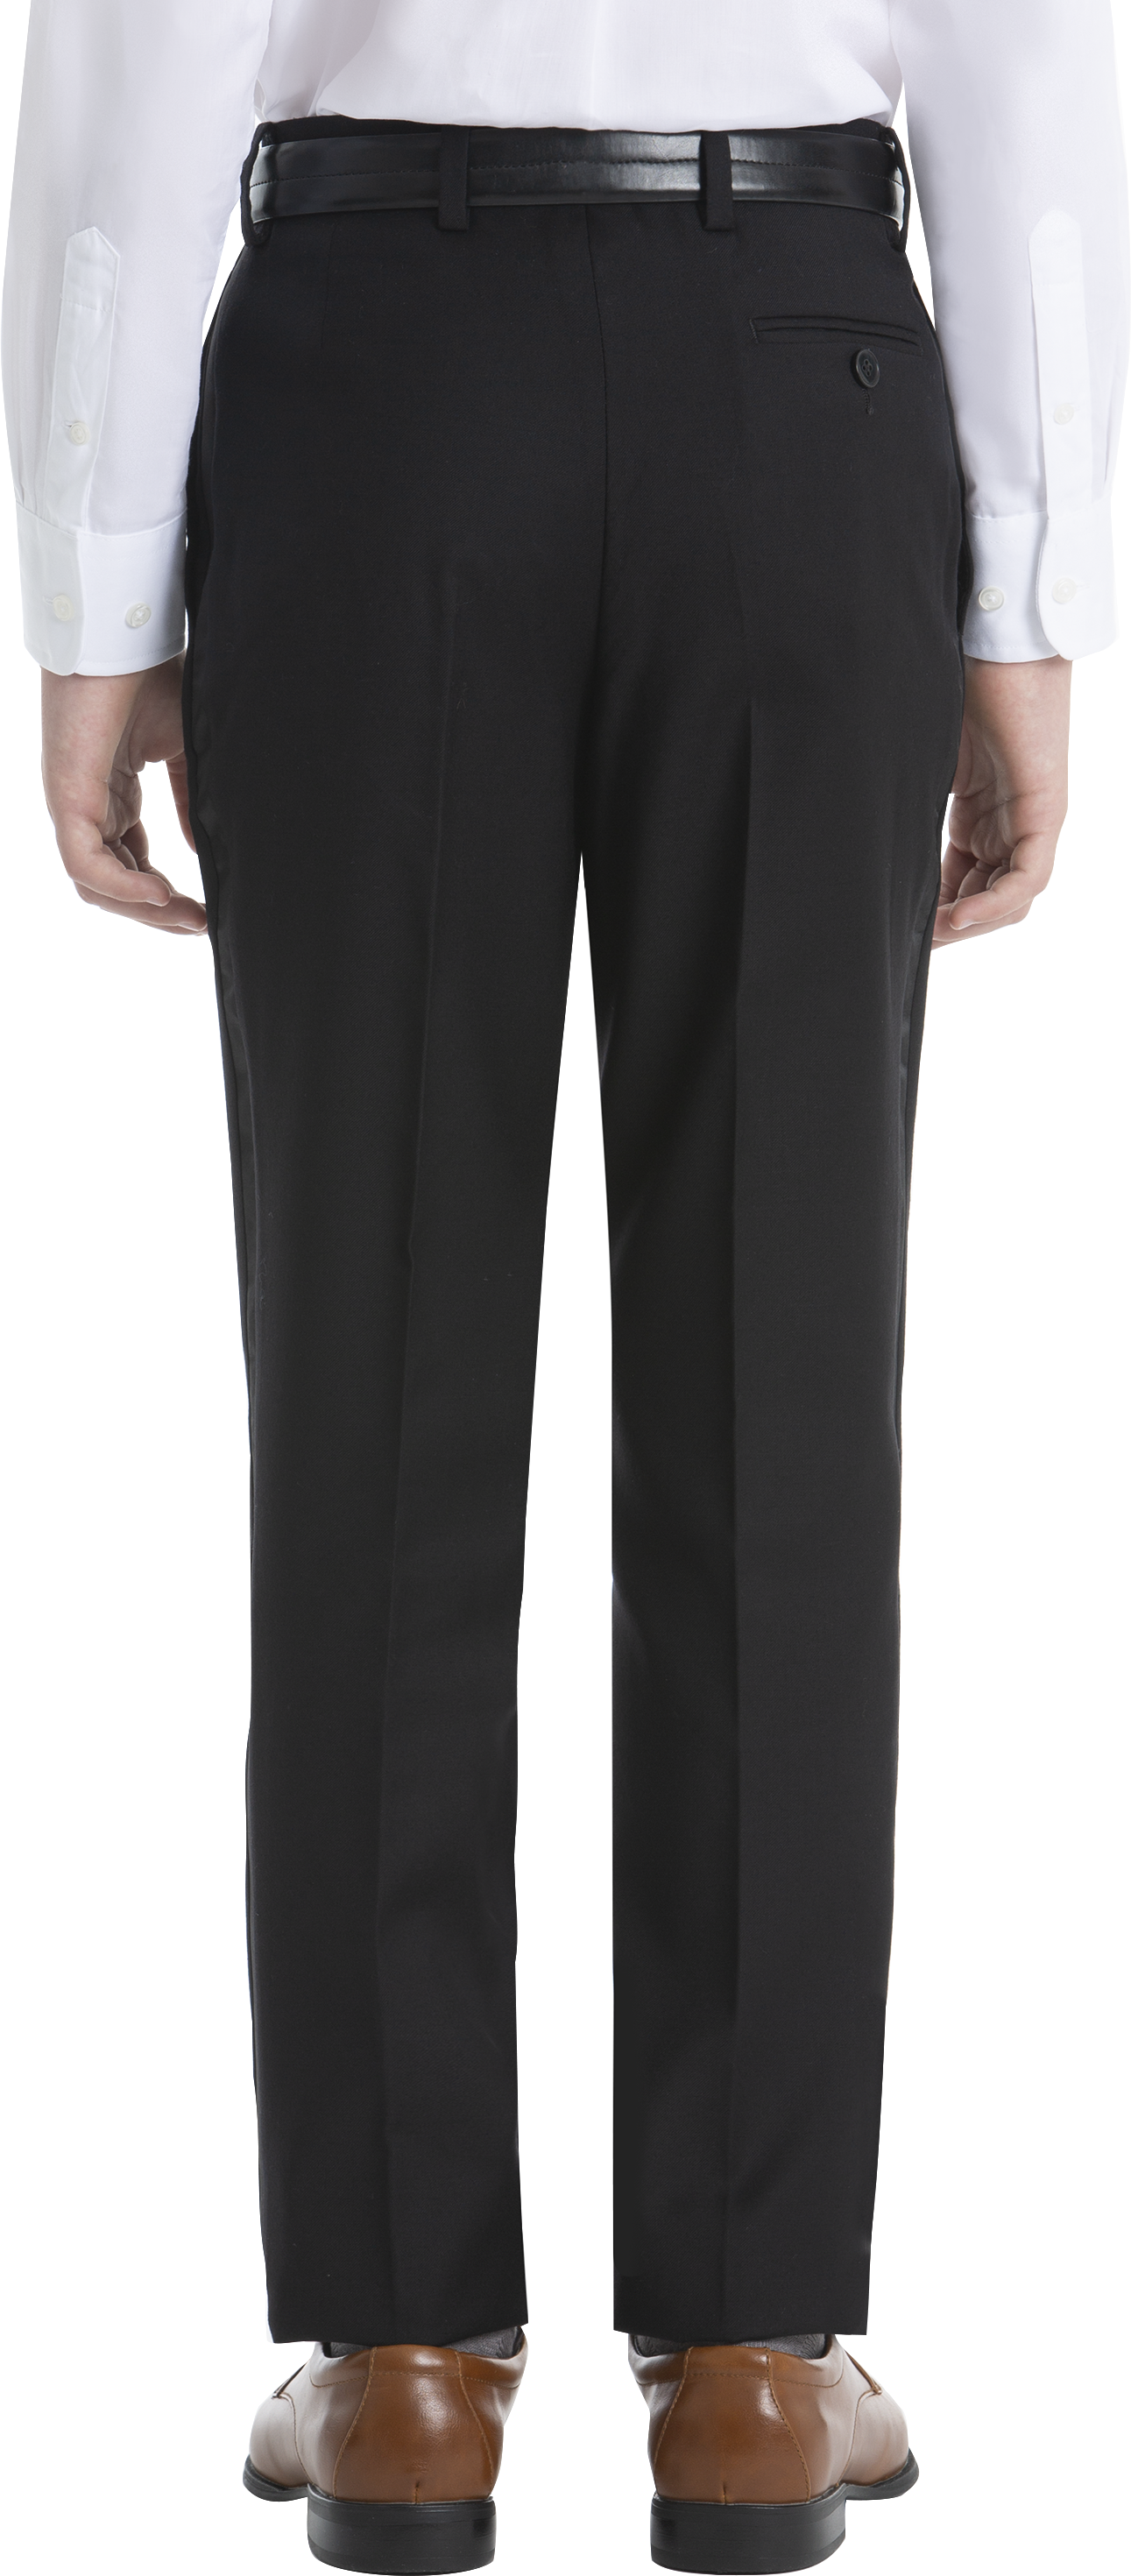 Boys (Sizes -) Suit Separates Tuxedo Pants